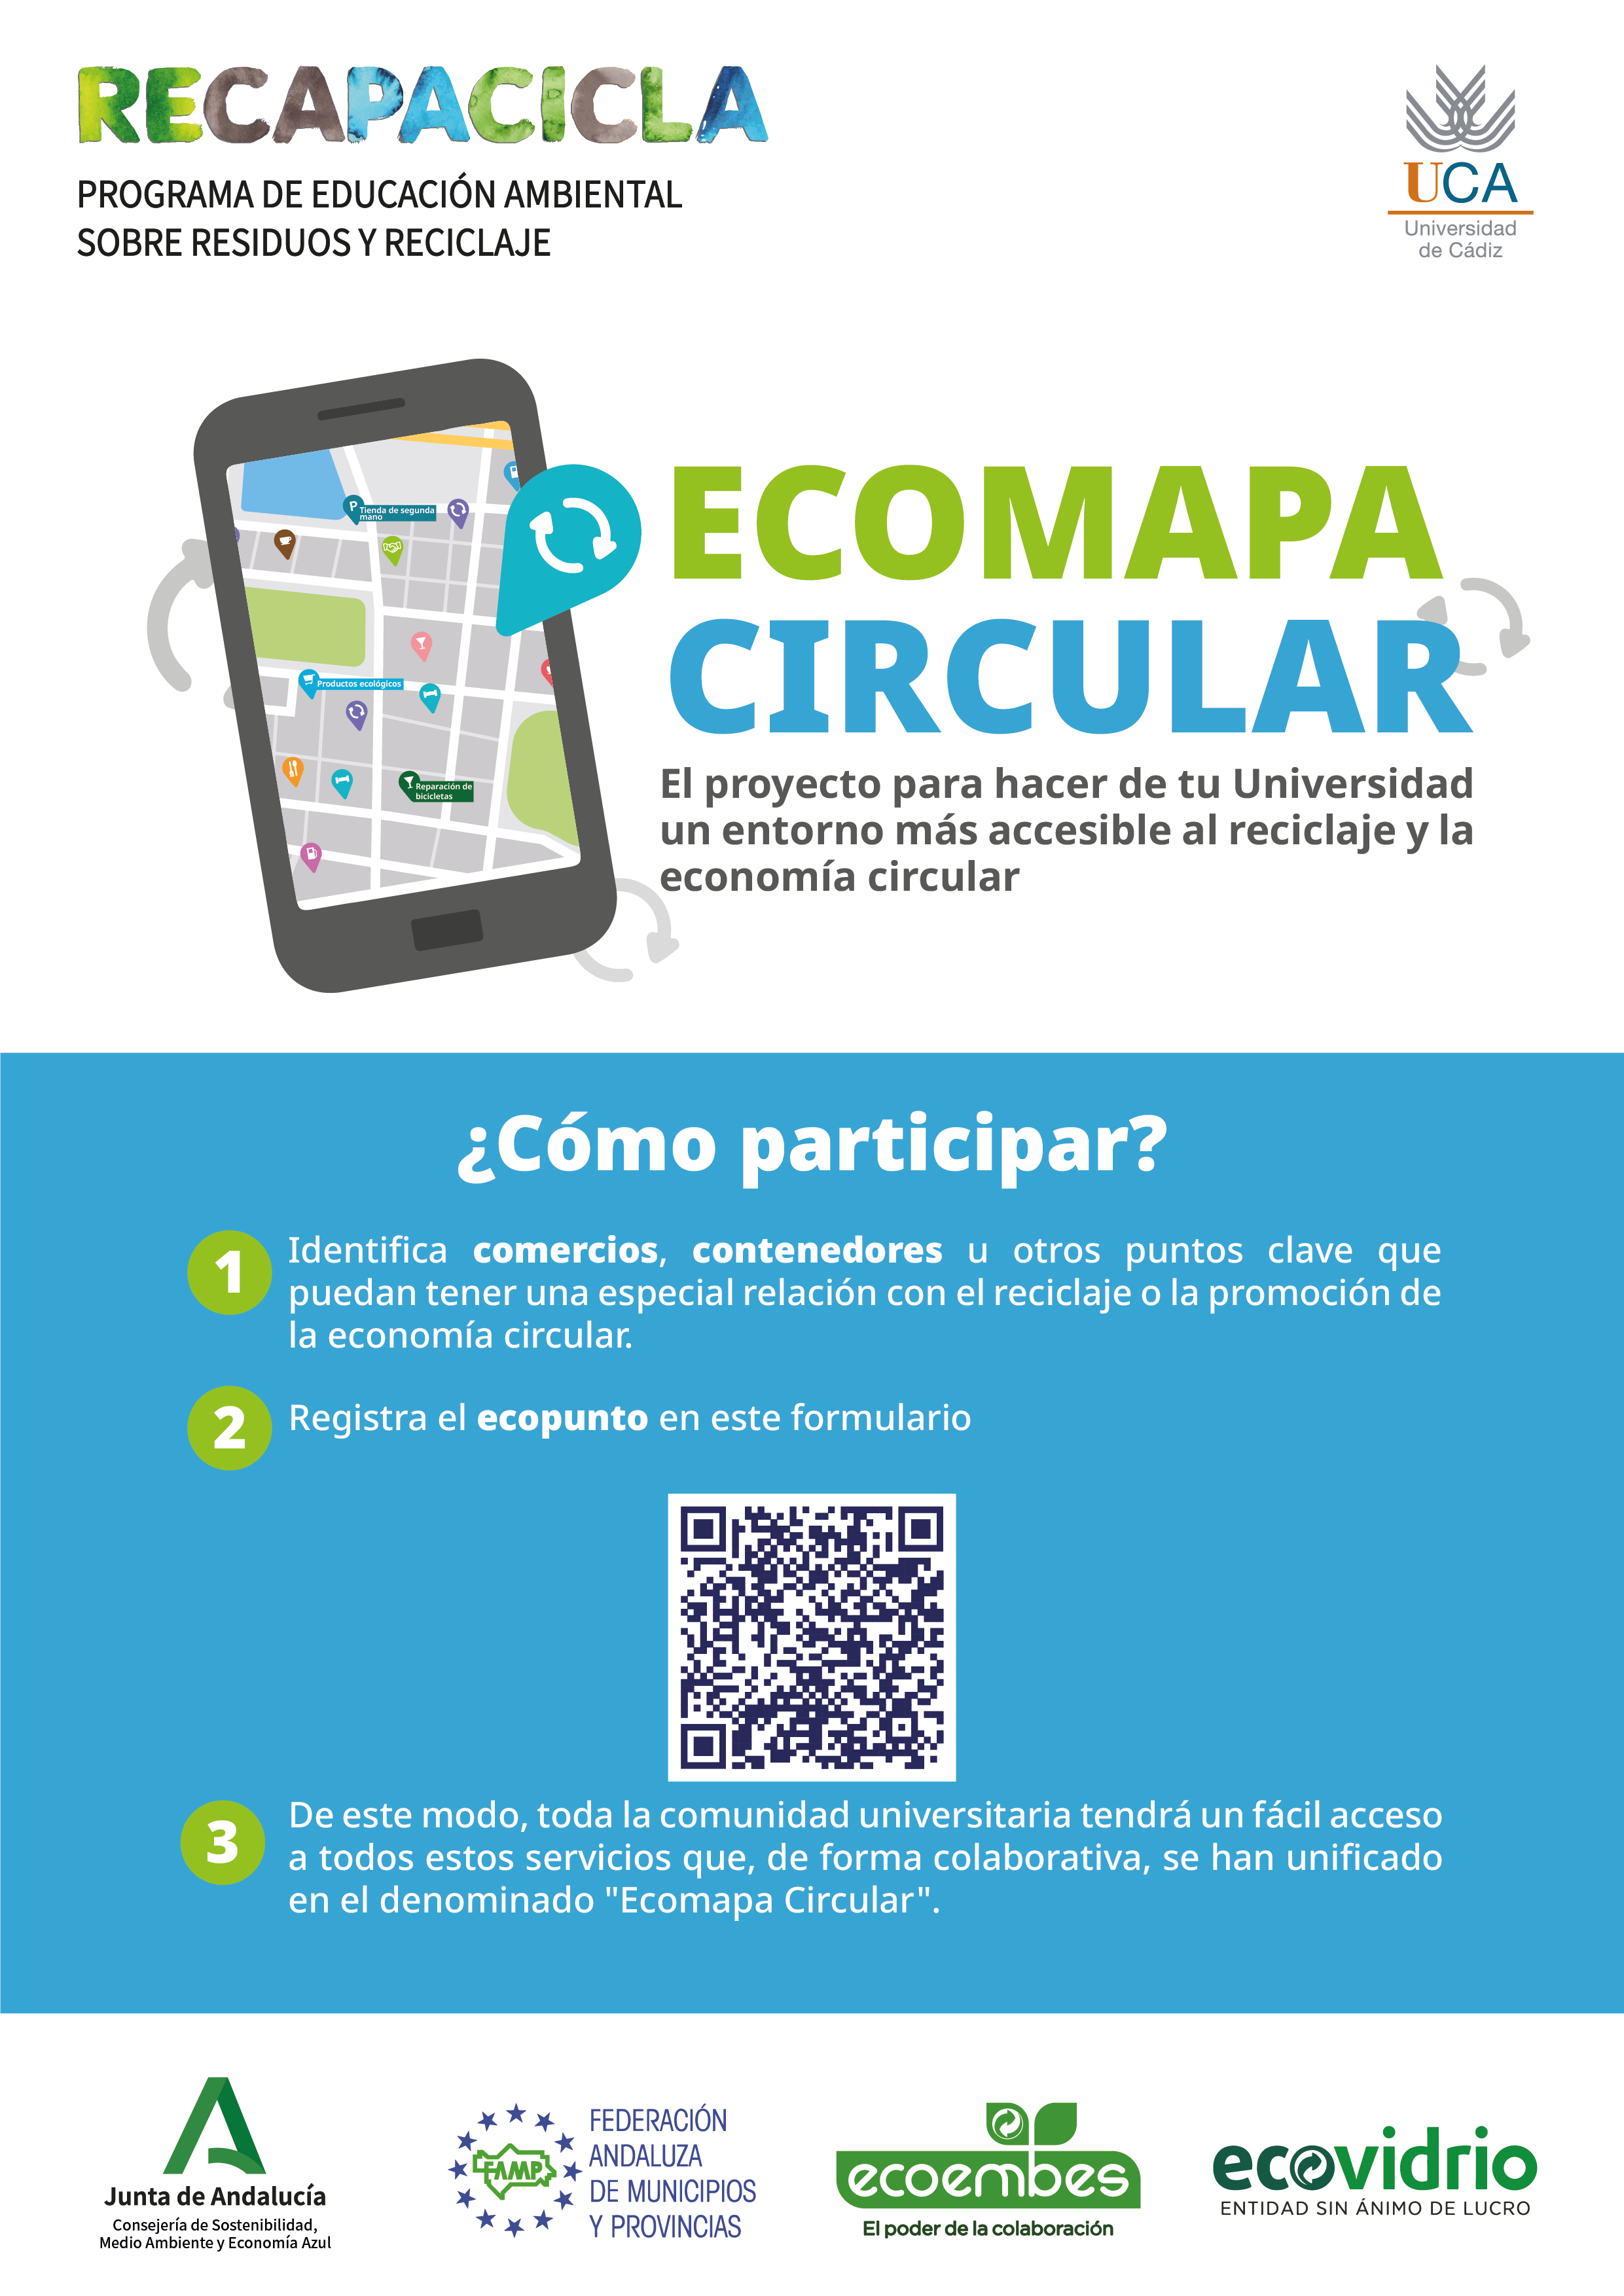 ¿Nos ayudas a elaborar el Ecomapa Circular de la Universidad de Cádiz?